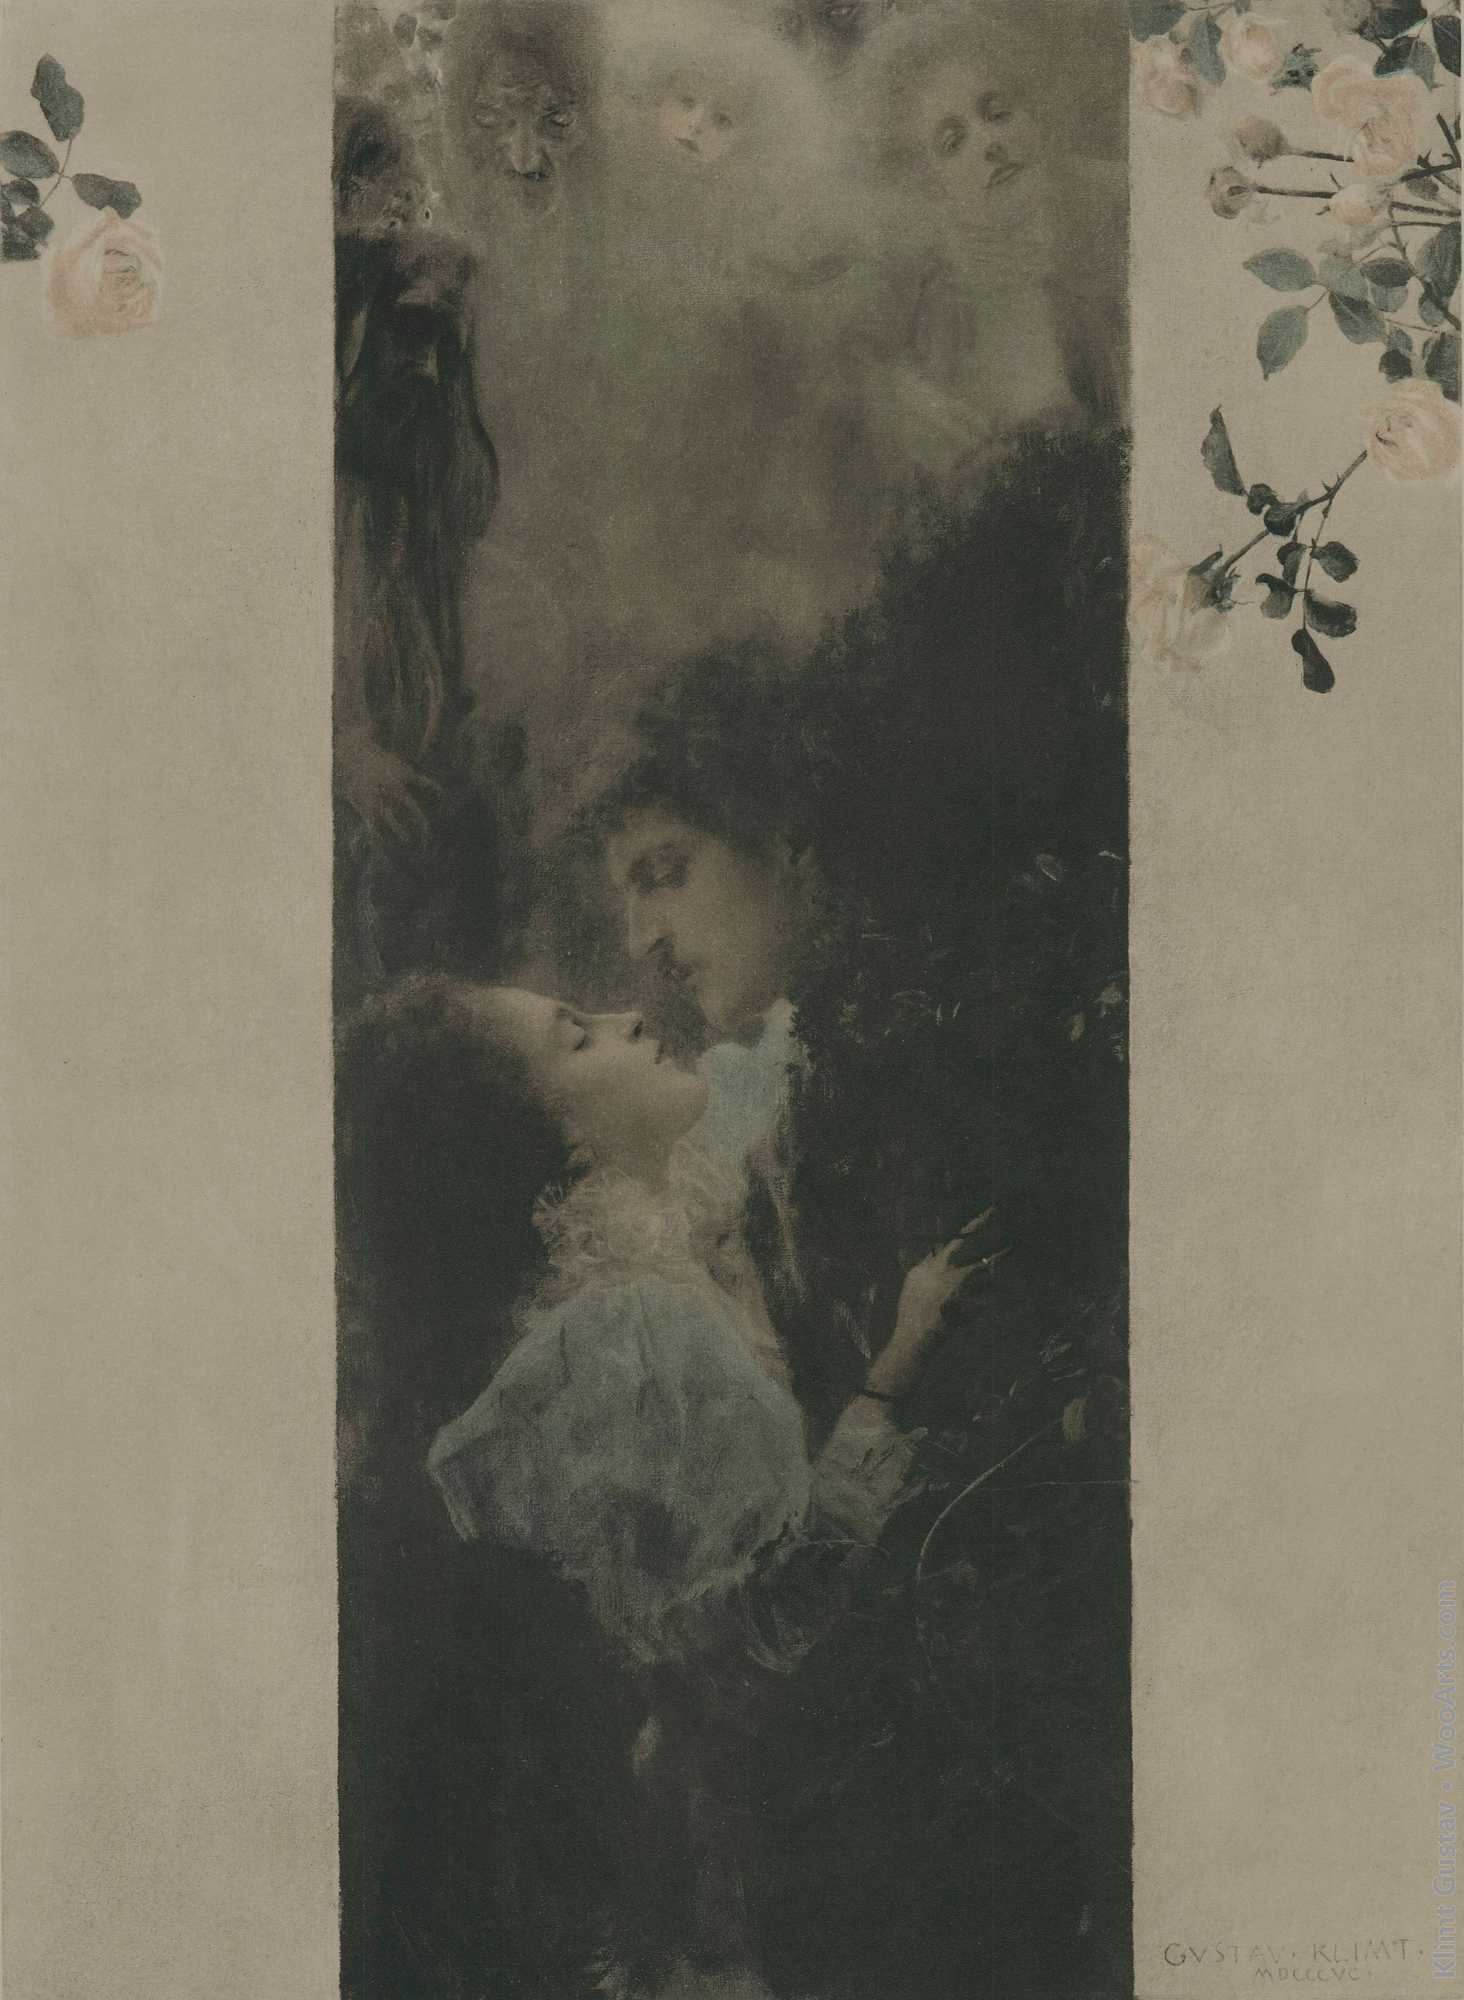 Liebe - plate no. 46. from - Allegorien. Neue Folge - edited by Martin Gerlach Gustav Klimt 1895-1900